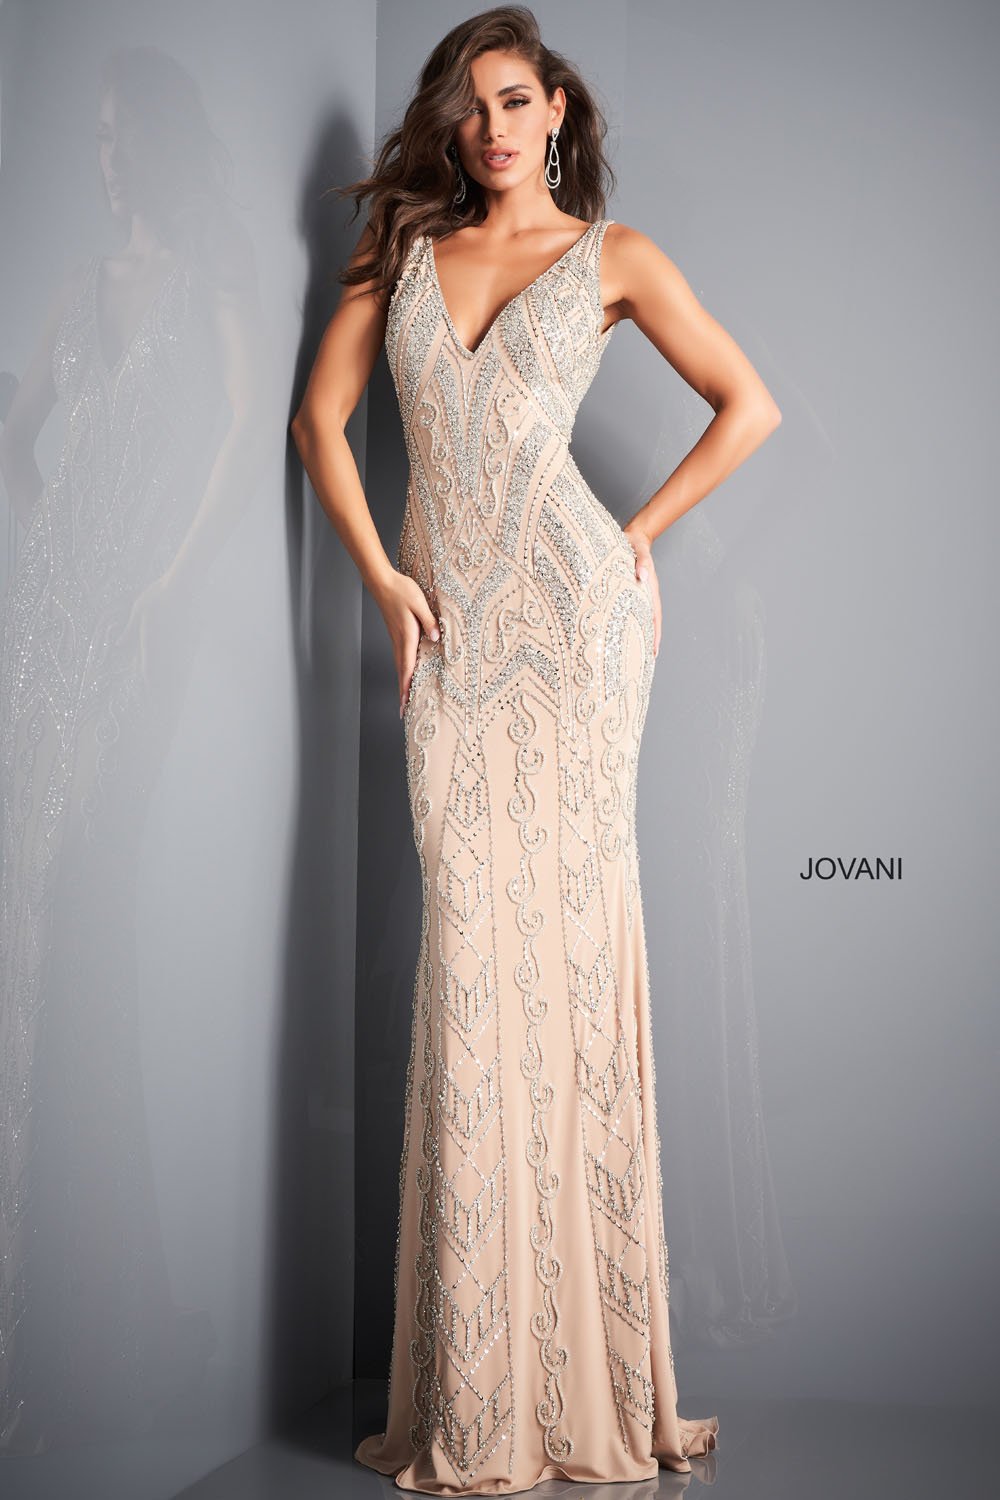 Jovani 4017 Dress | Jovani Dresses ...